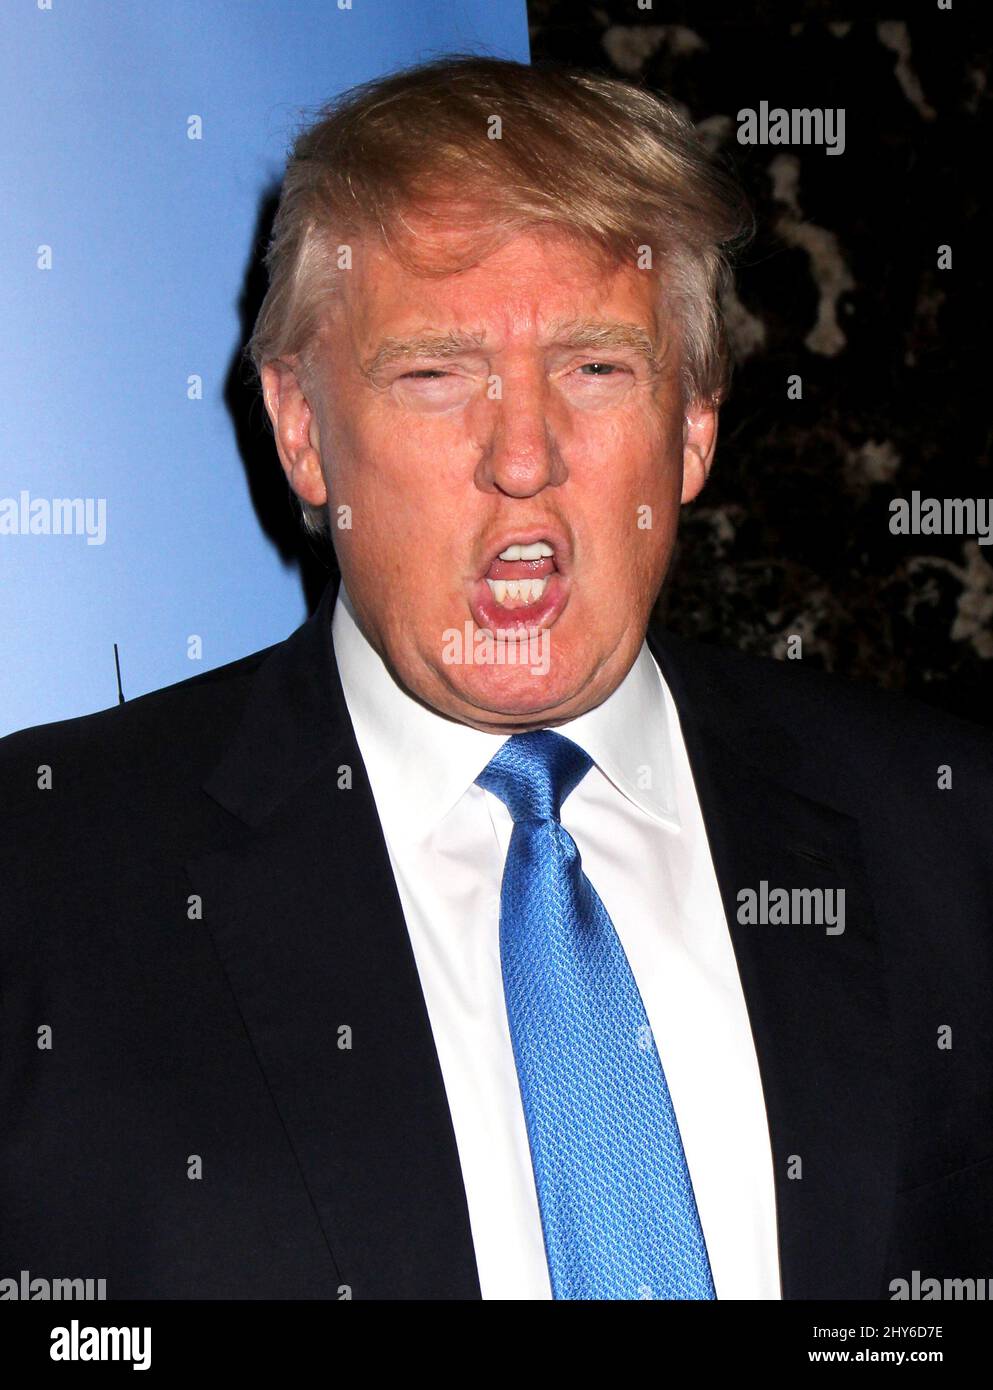 Donald Trump participe à l'événement tapis rouge « Celebrity Apprentice » à Trump Towers à New York Banque D'Images